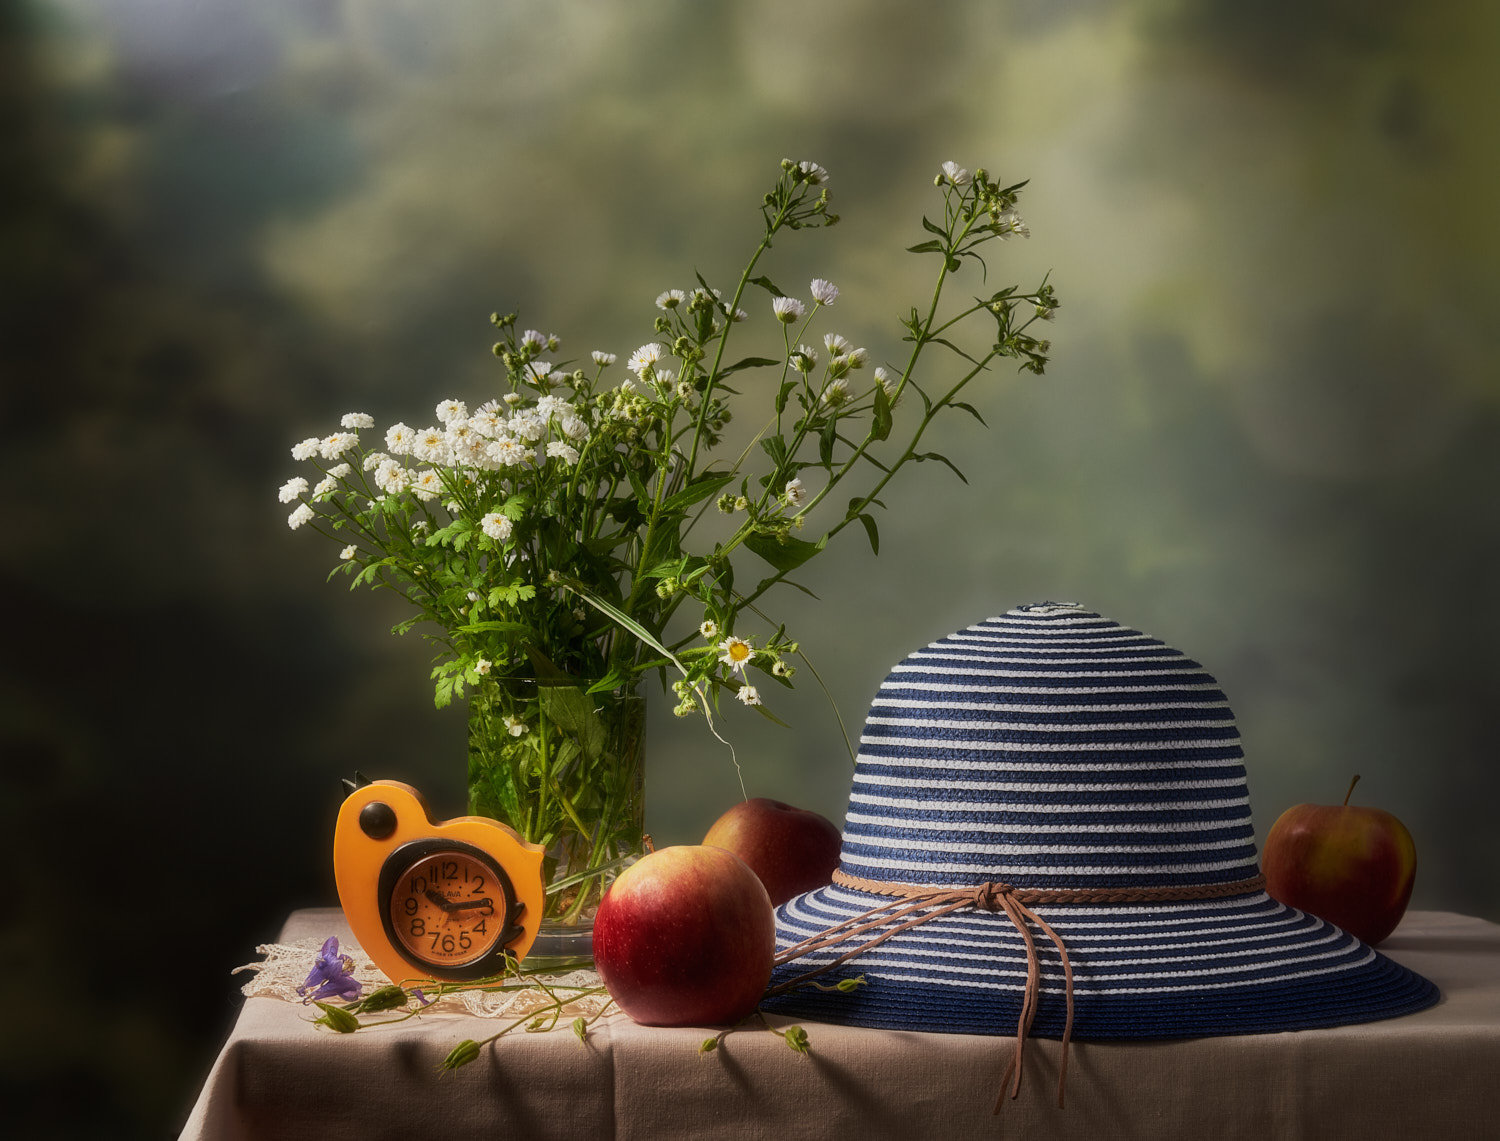 На тему лета натюрморт композиция постановка сцена предметы цветы букет шляпа яблоки